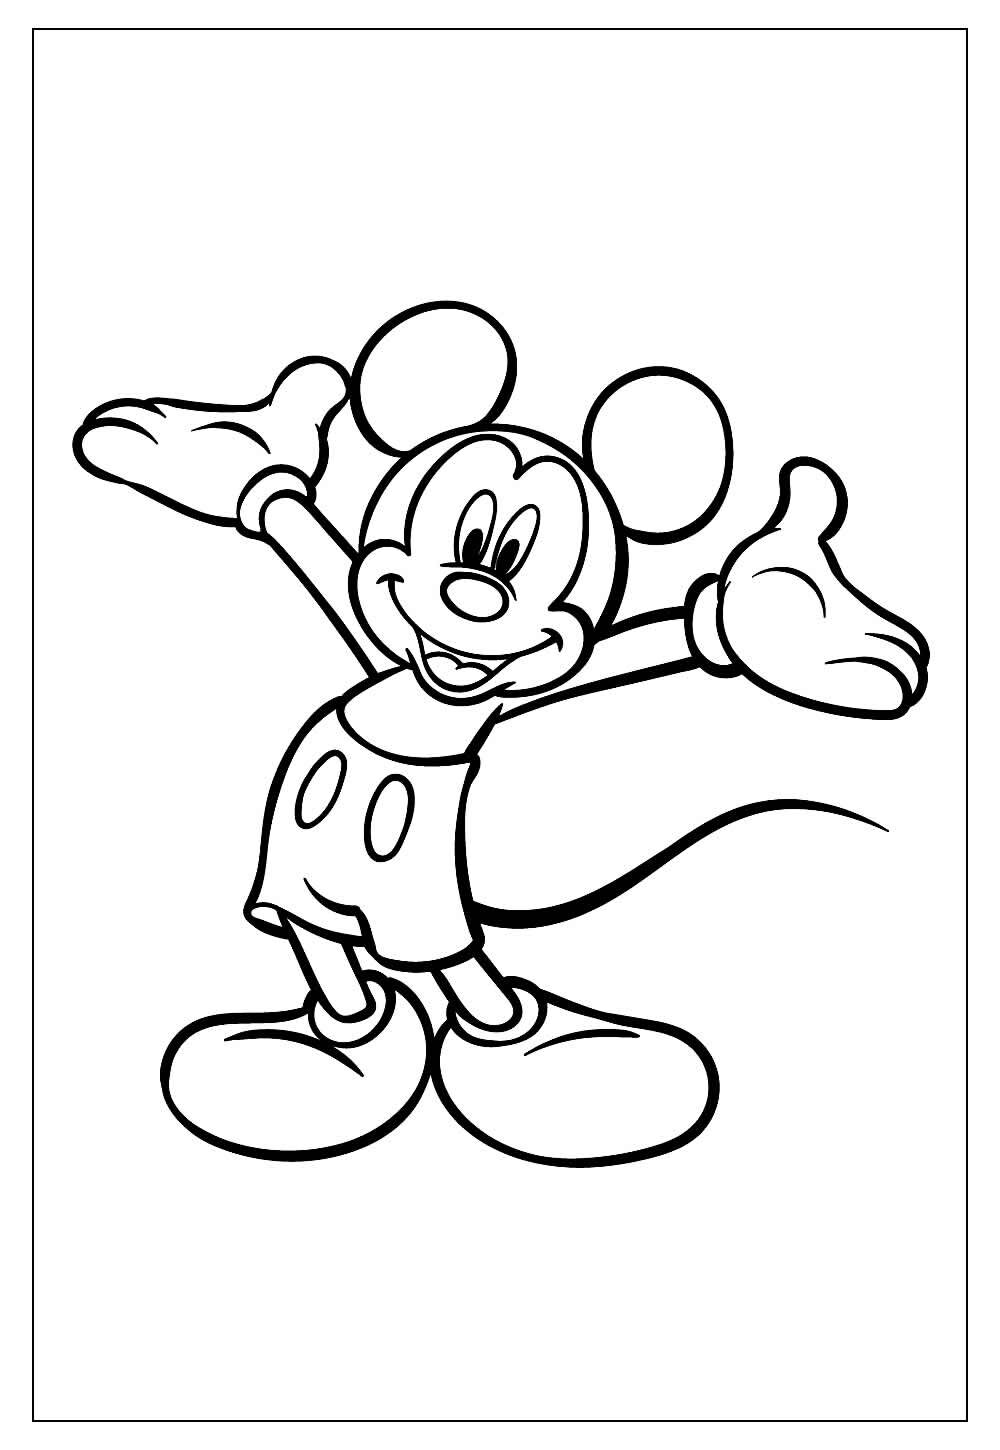 Desenho do Mickey Mouse para colorir